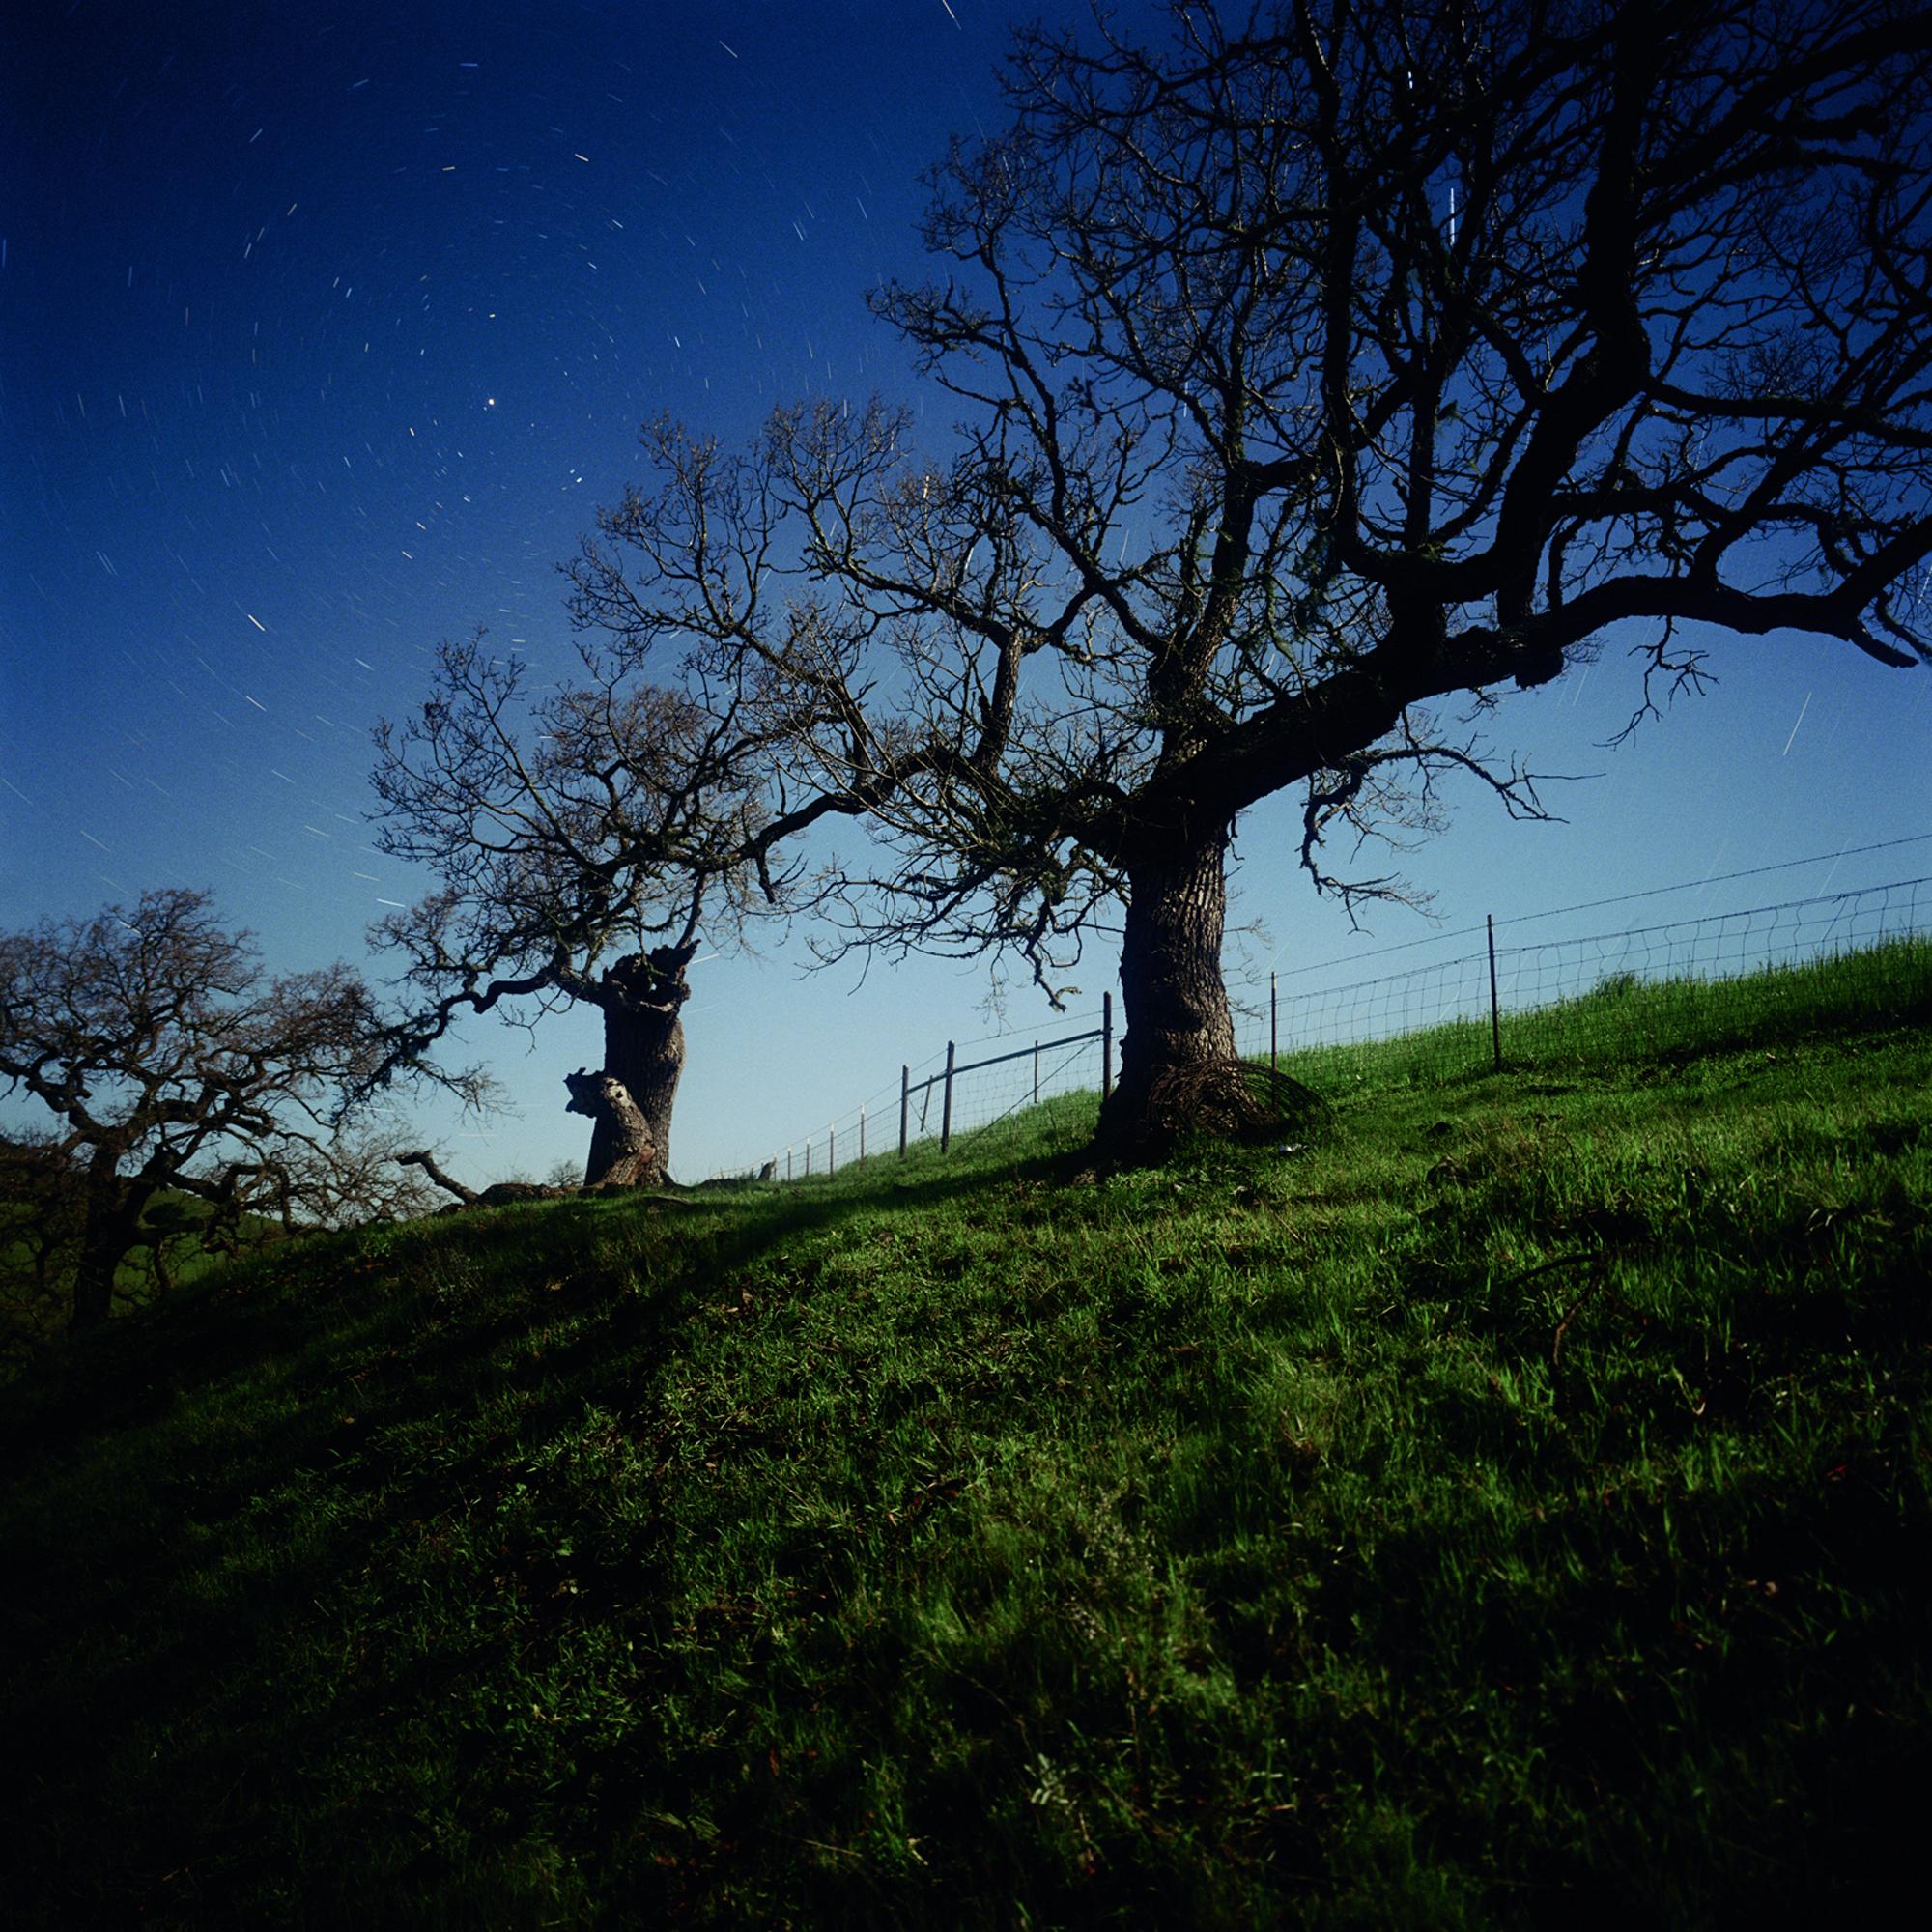 Darren Almond Color Photograph – California North Star